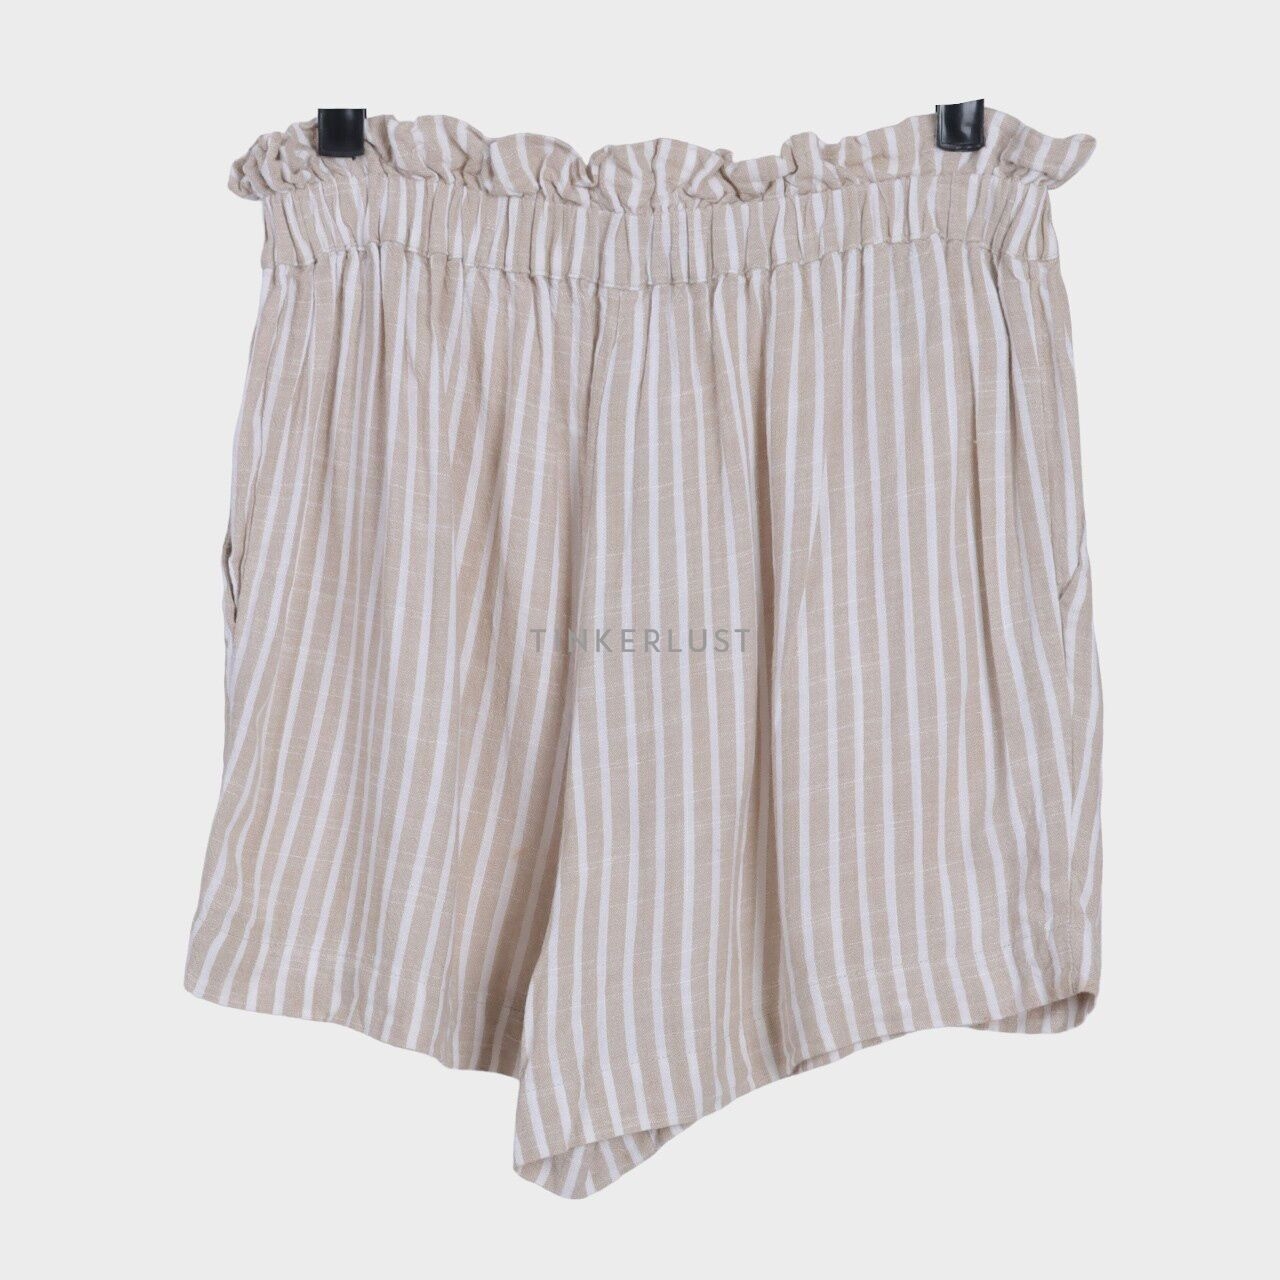 Magali Pascal White & Khaki Stripes Short Pants